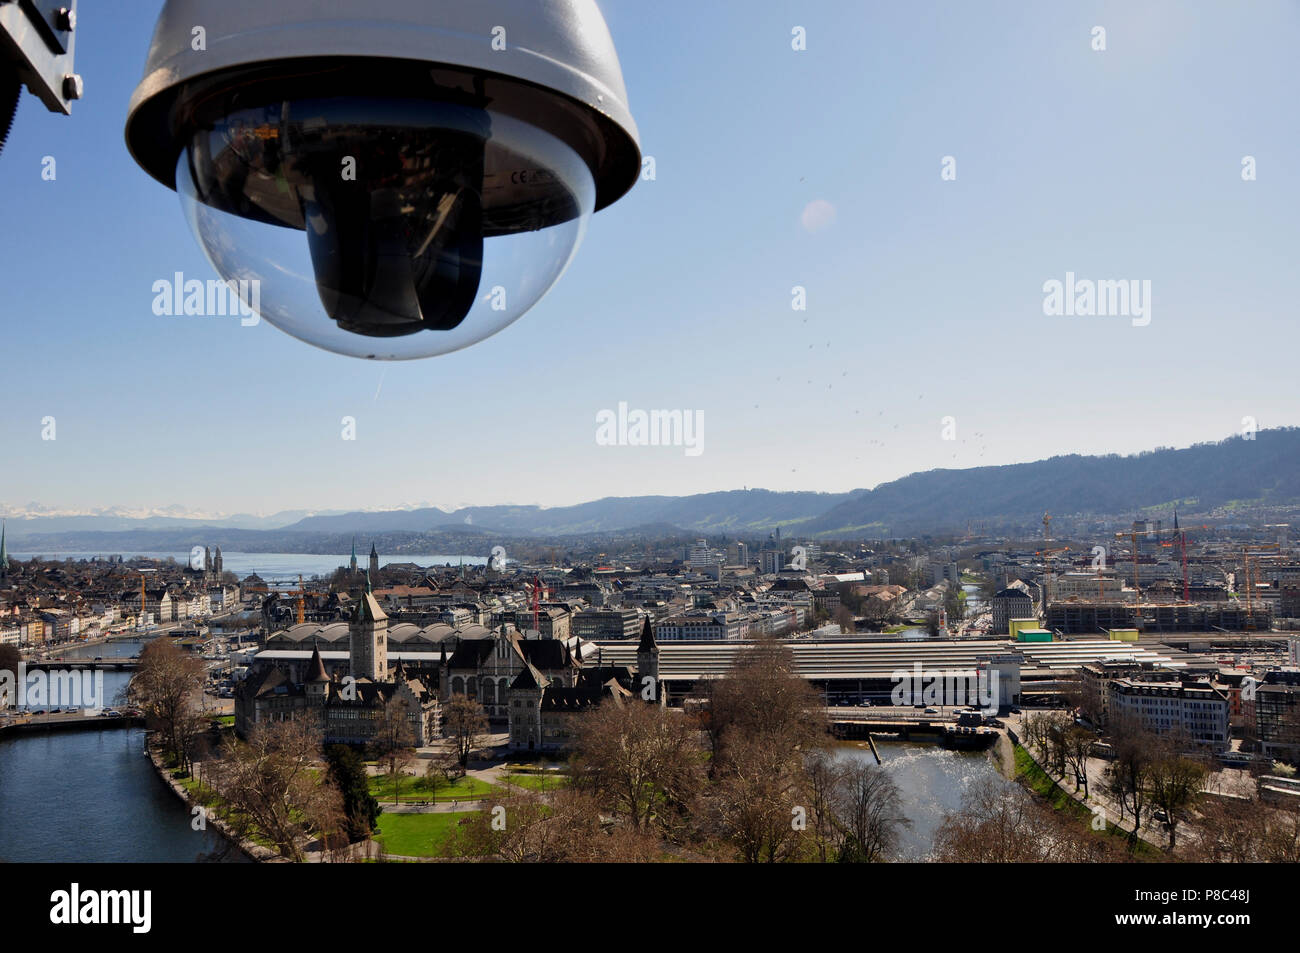 Schweiz: Die Webcam von Zürich-City Tourismus zeigt die Schönheit der Stadt  Stockfotografie - Alamy